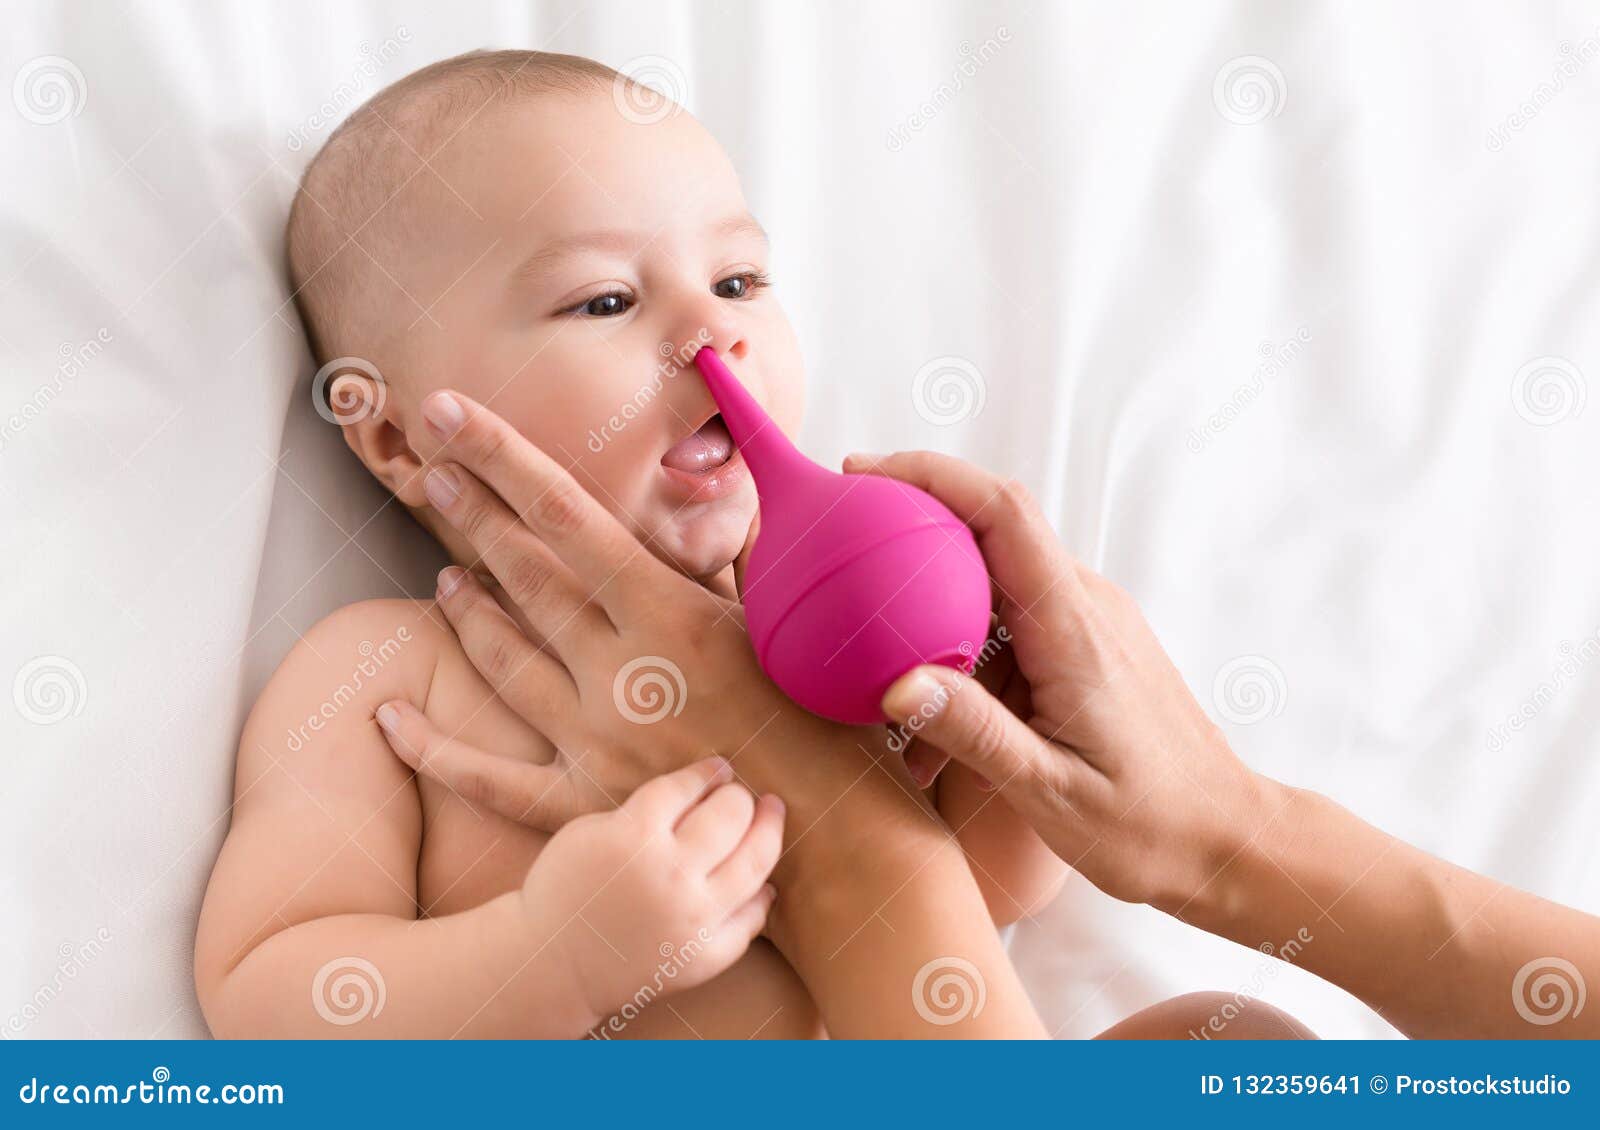 Generic Nettoyeur de nez pour bébé professionnel pour enfants